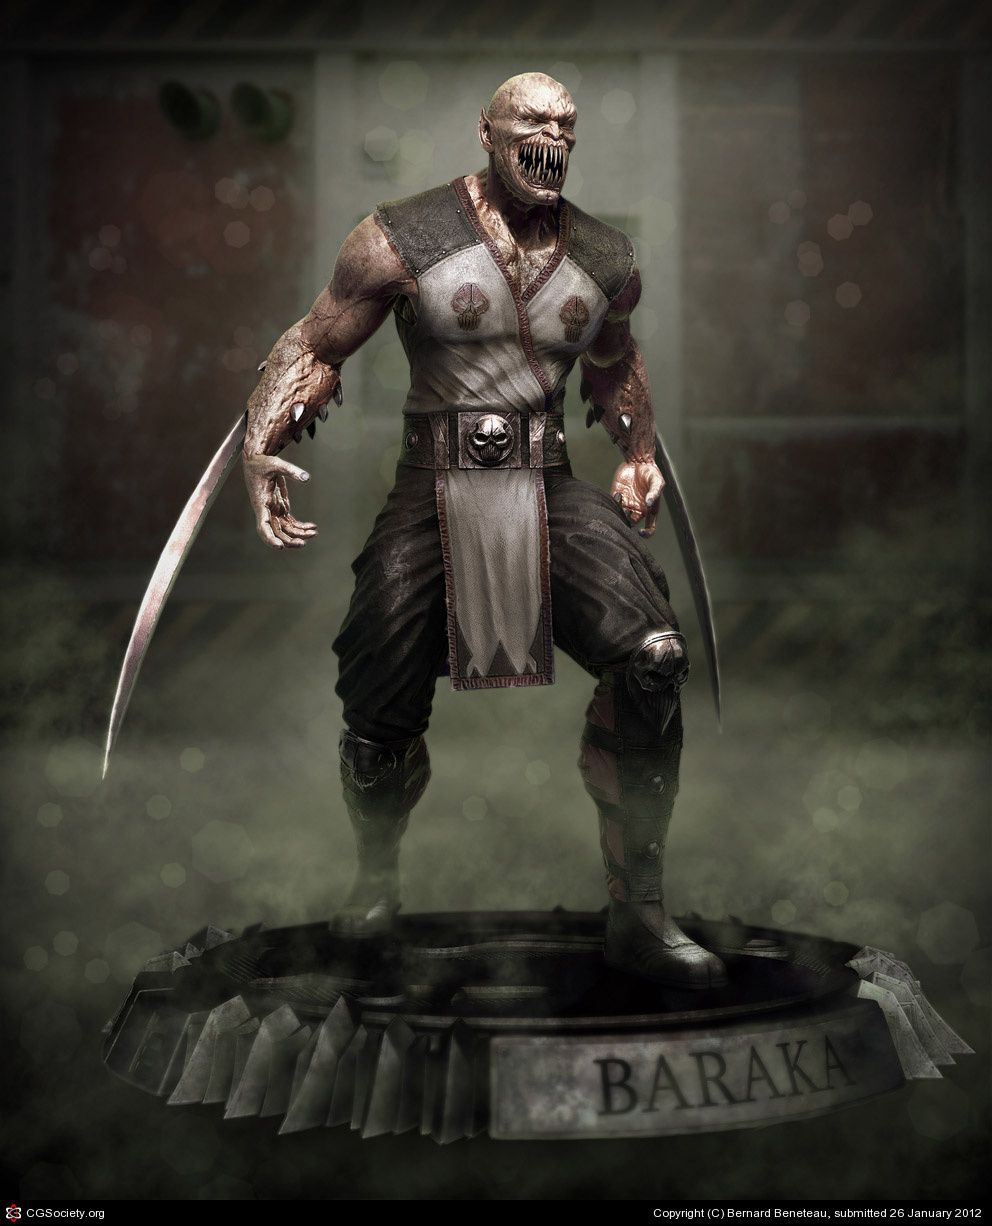 Download Fierce Baraka in Mortal Kombat Wallpaper